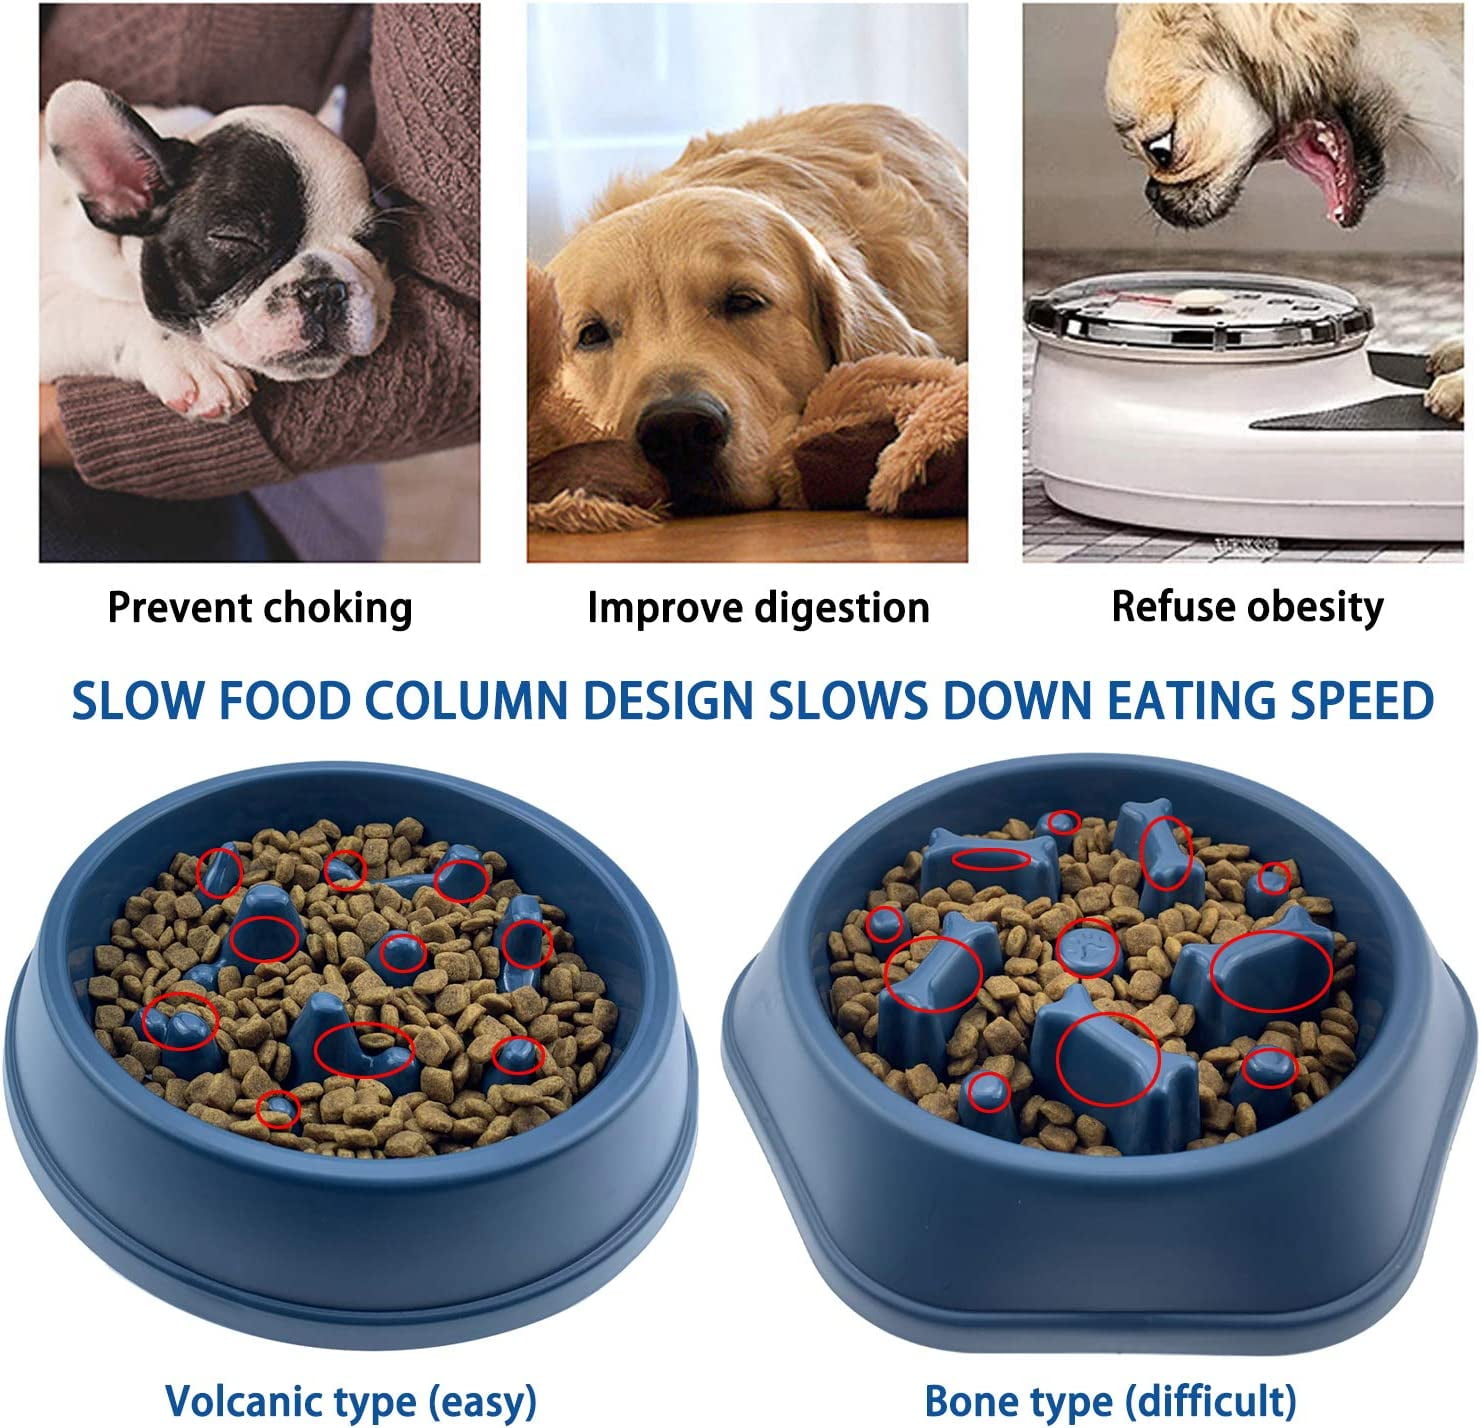 Slow Feeder Dog Bowls Slow Feeding Dog Bowl Small Medium Breed Dog Food Bowls Slow Feed Dog Bowl Slow Eating Dog Slow Feeder Bowl Puppy Dog Puzzle